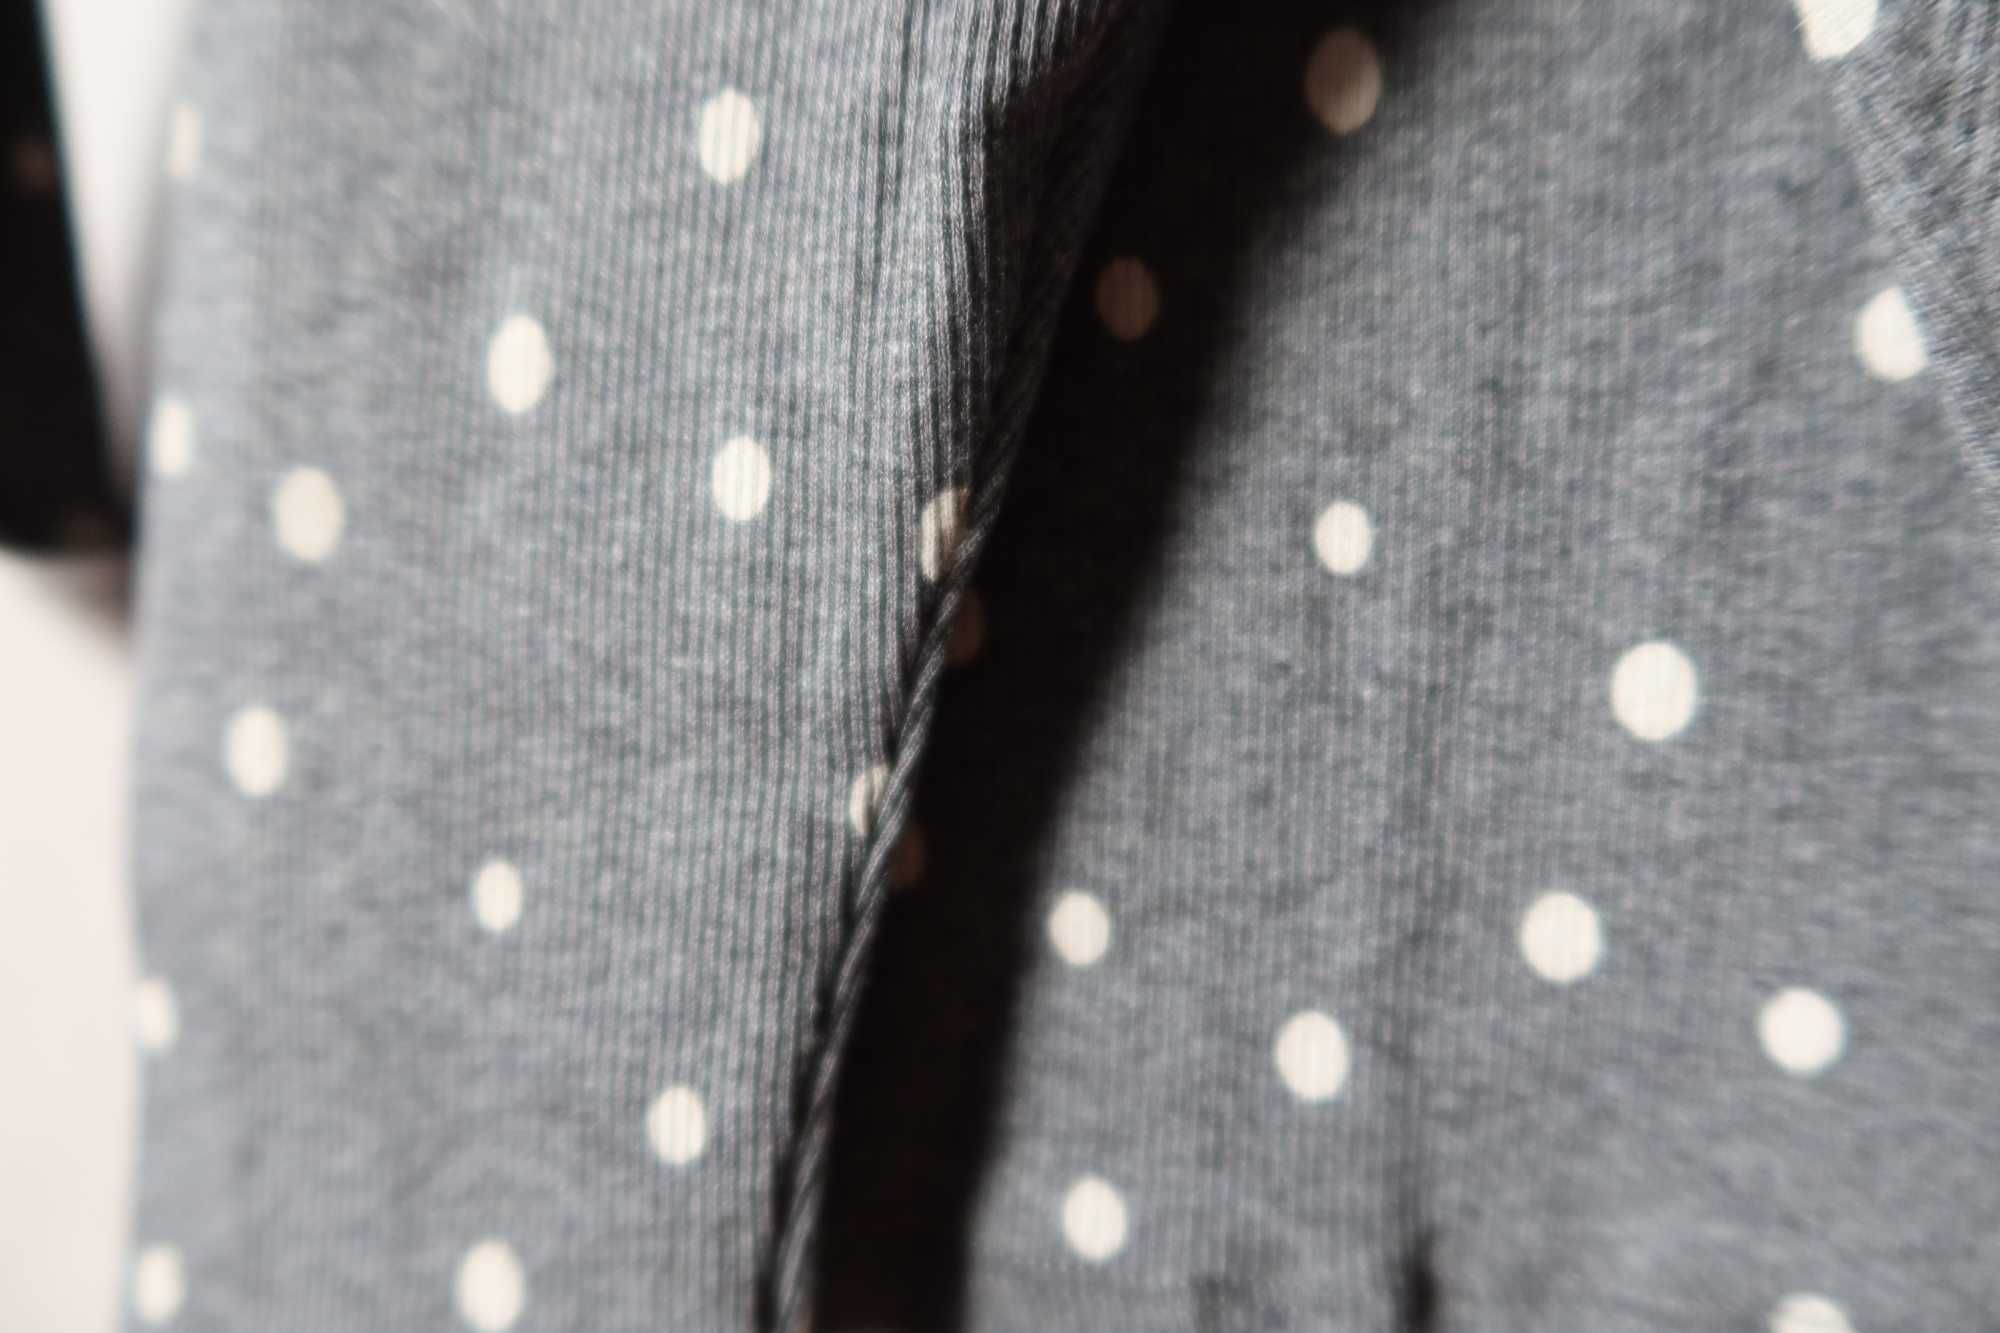 Komplet NEXT 74 bluzeczka legginsy prążkowany melanż kropki NOWY metką